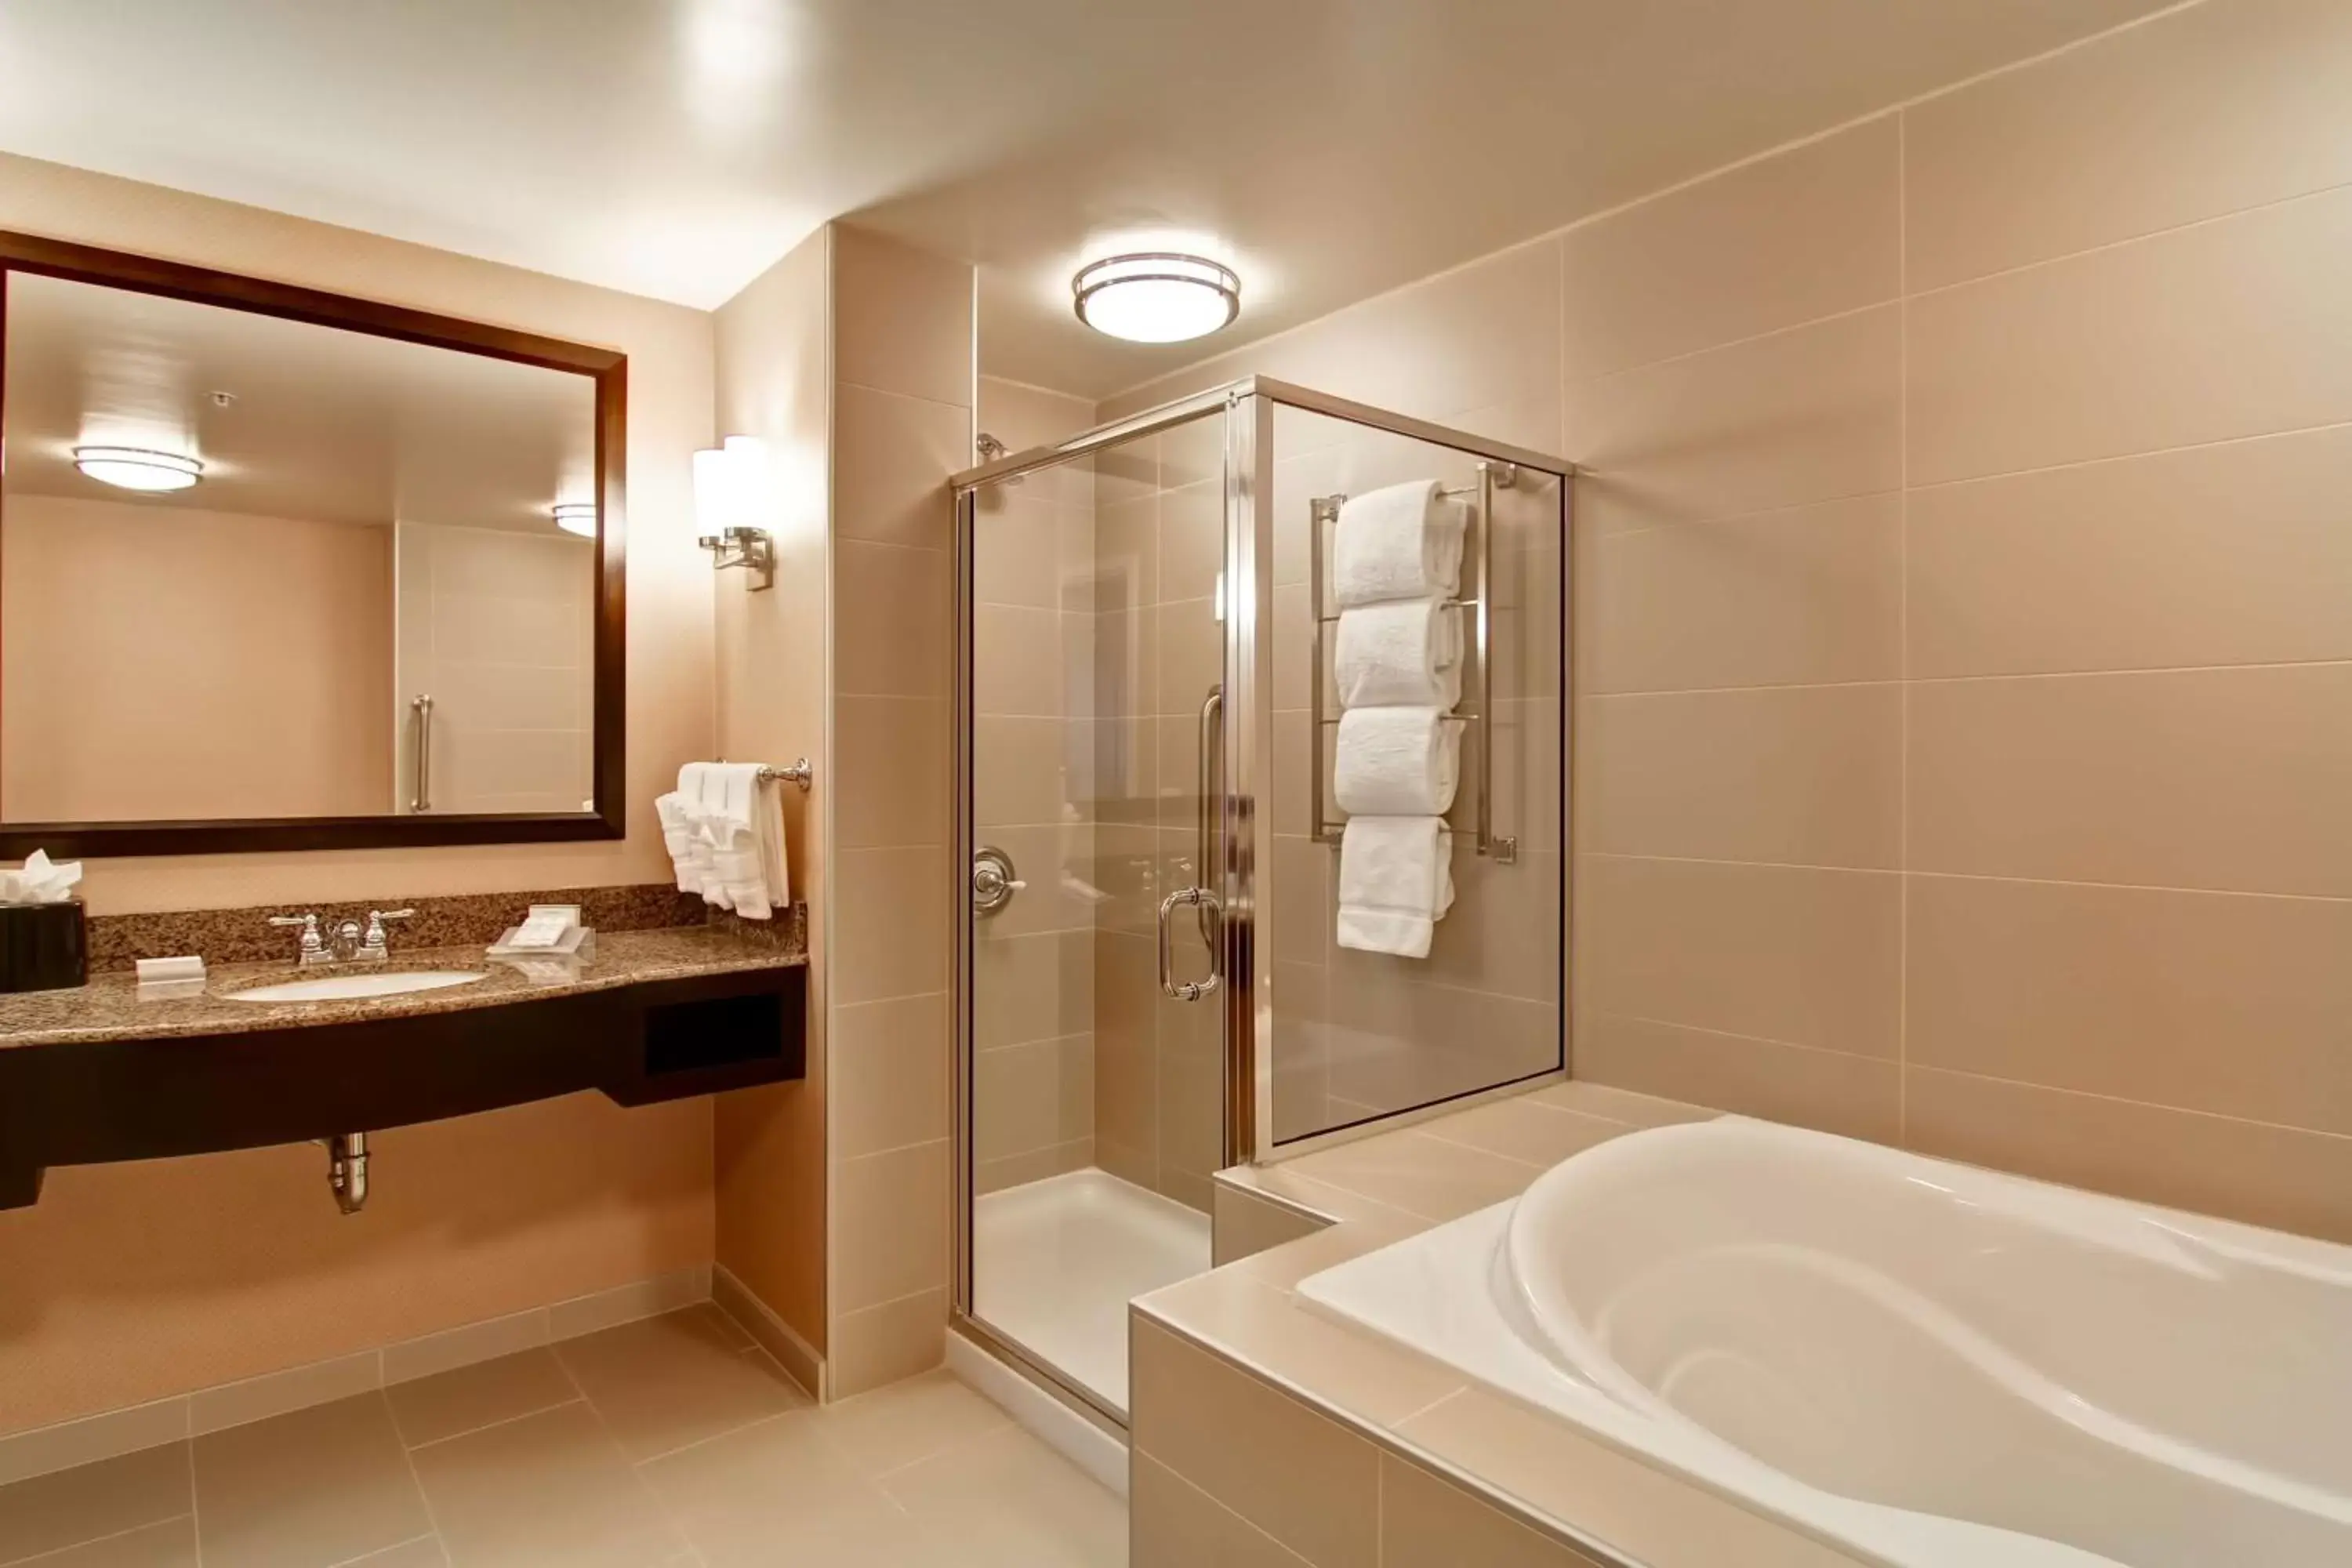 Bathroom in Hilton Garden Inn Woodbridge